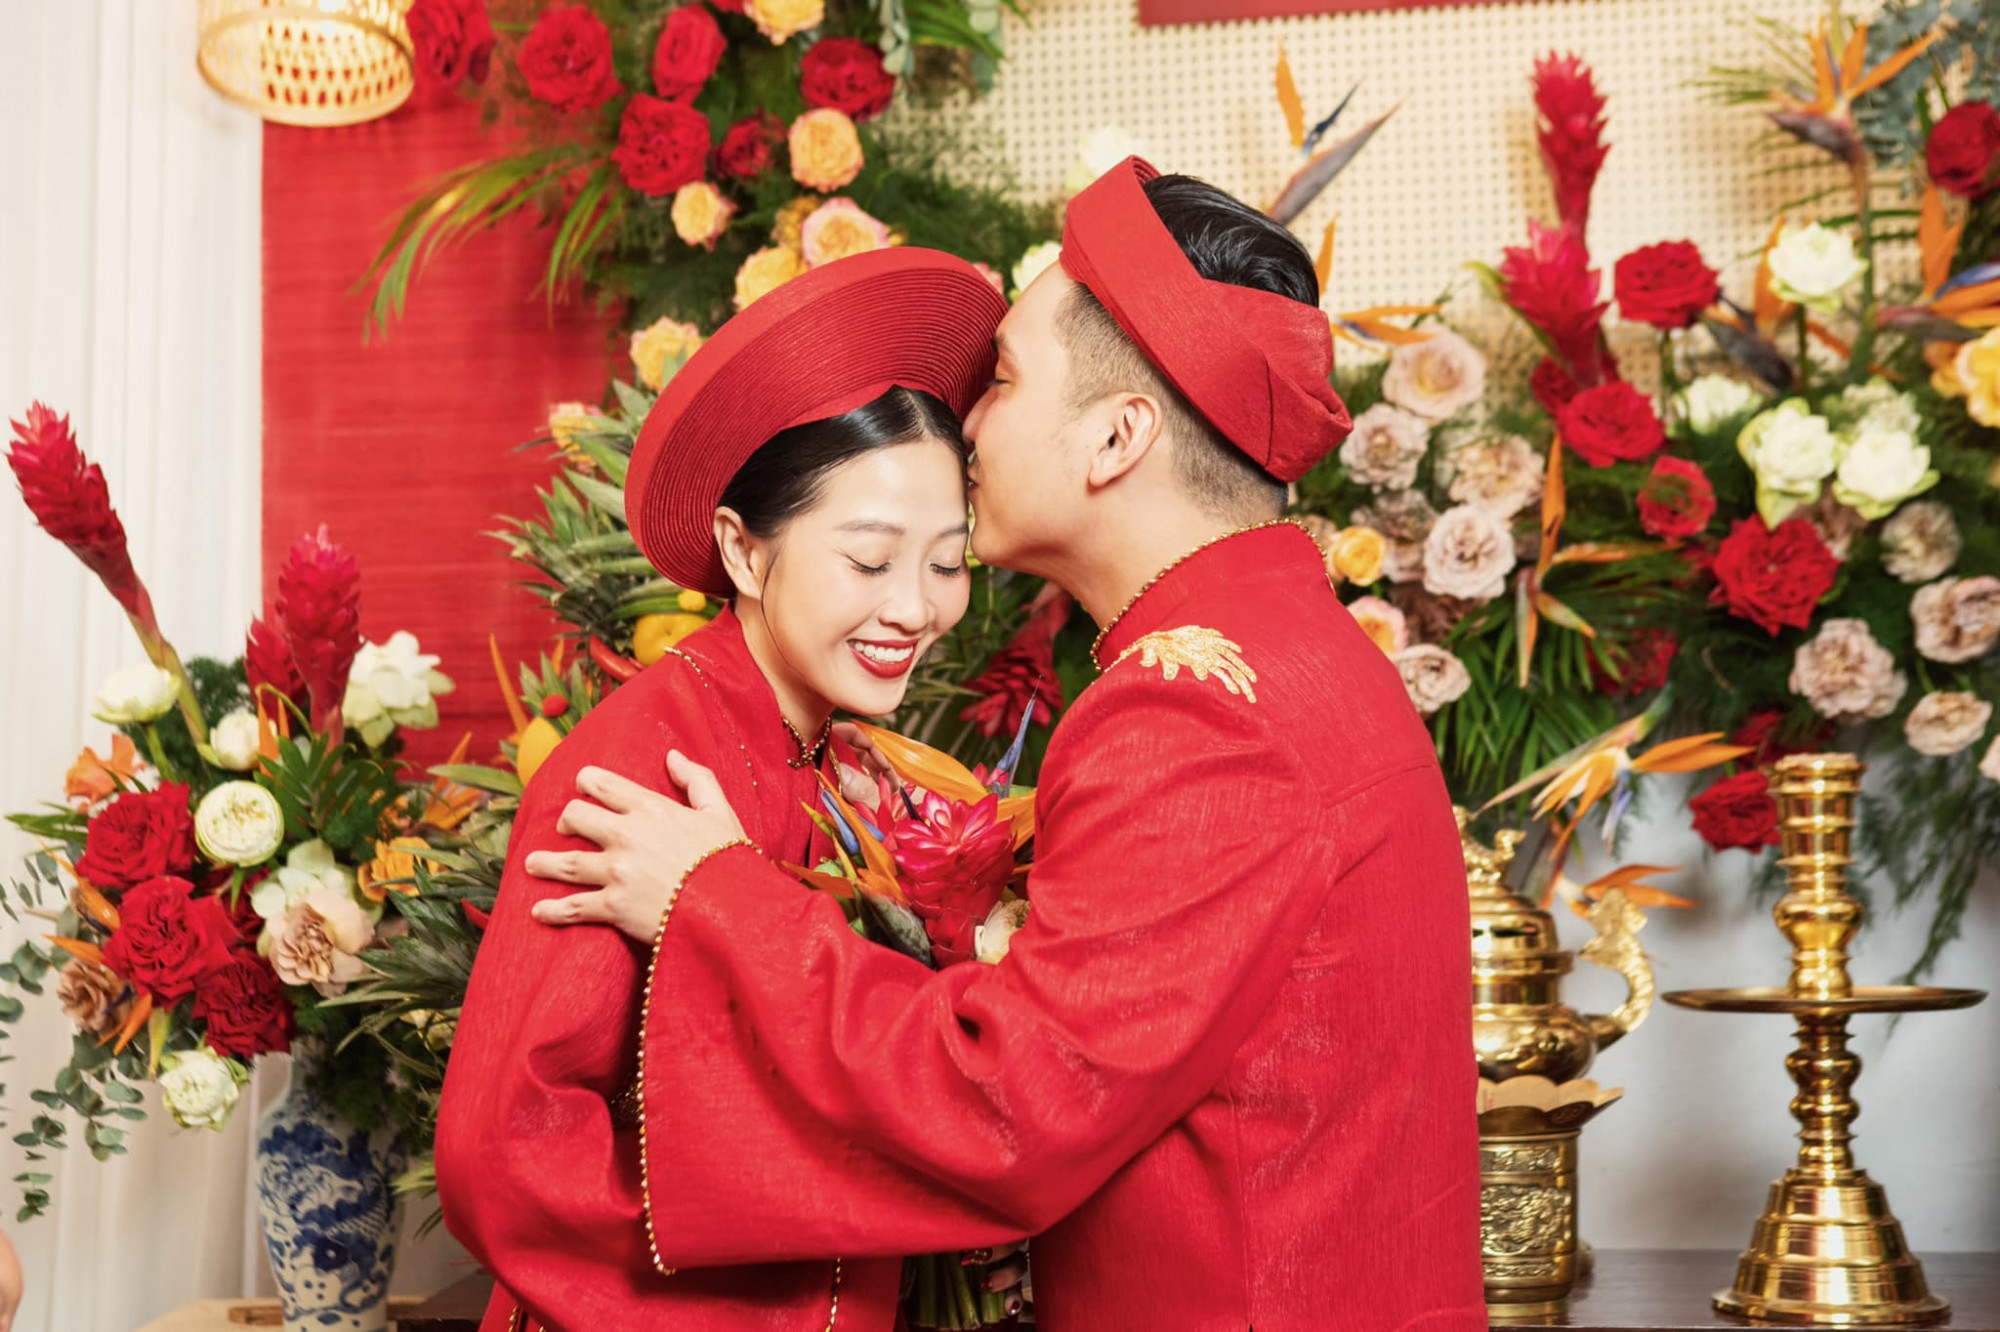 Chú rể Trần Anh Khoa trao cho vợ nụ hôn ngọt ngào trong lễ rước dâu.